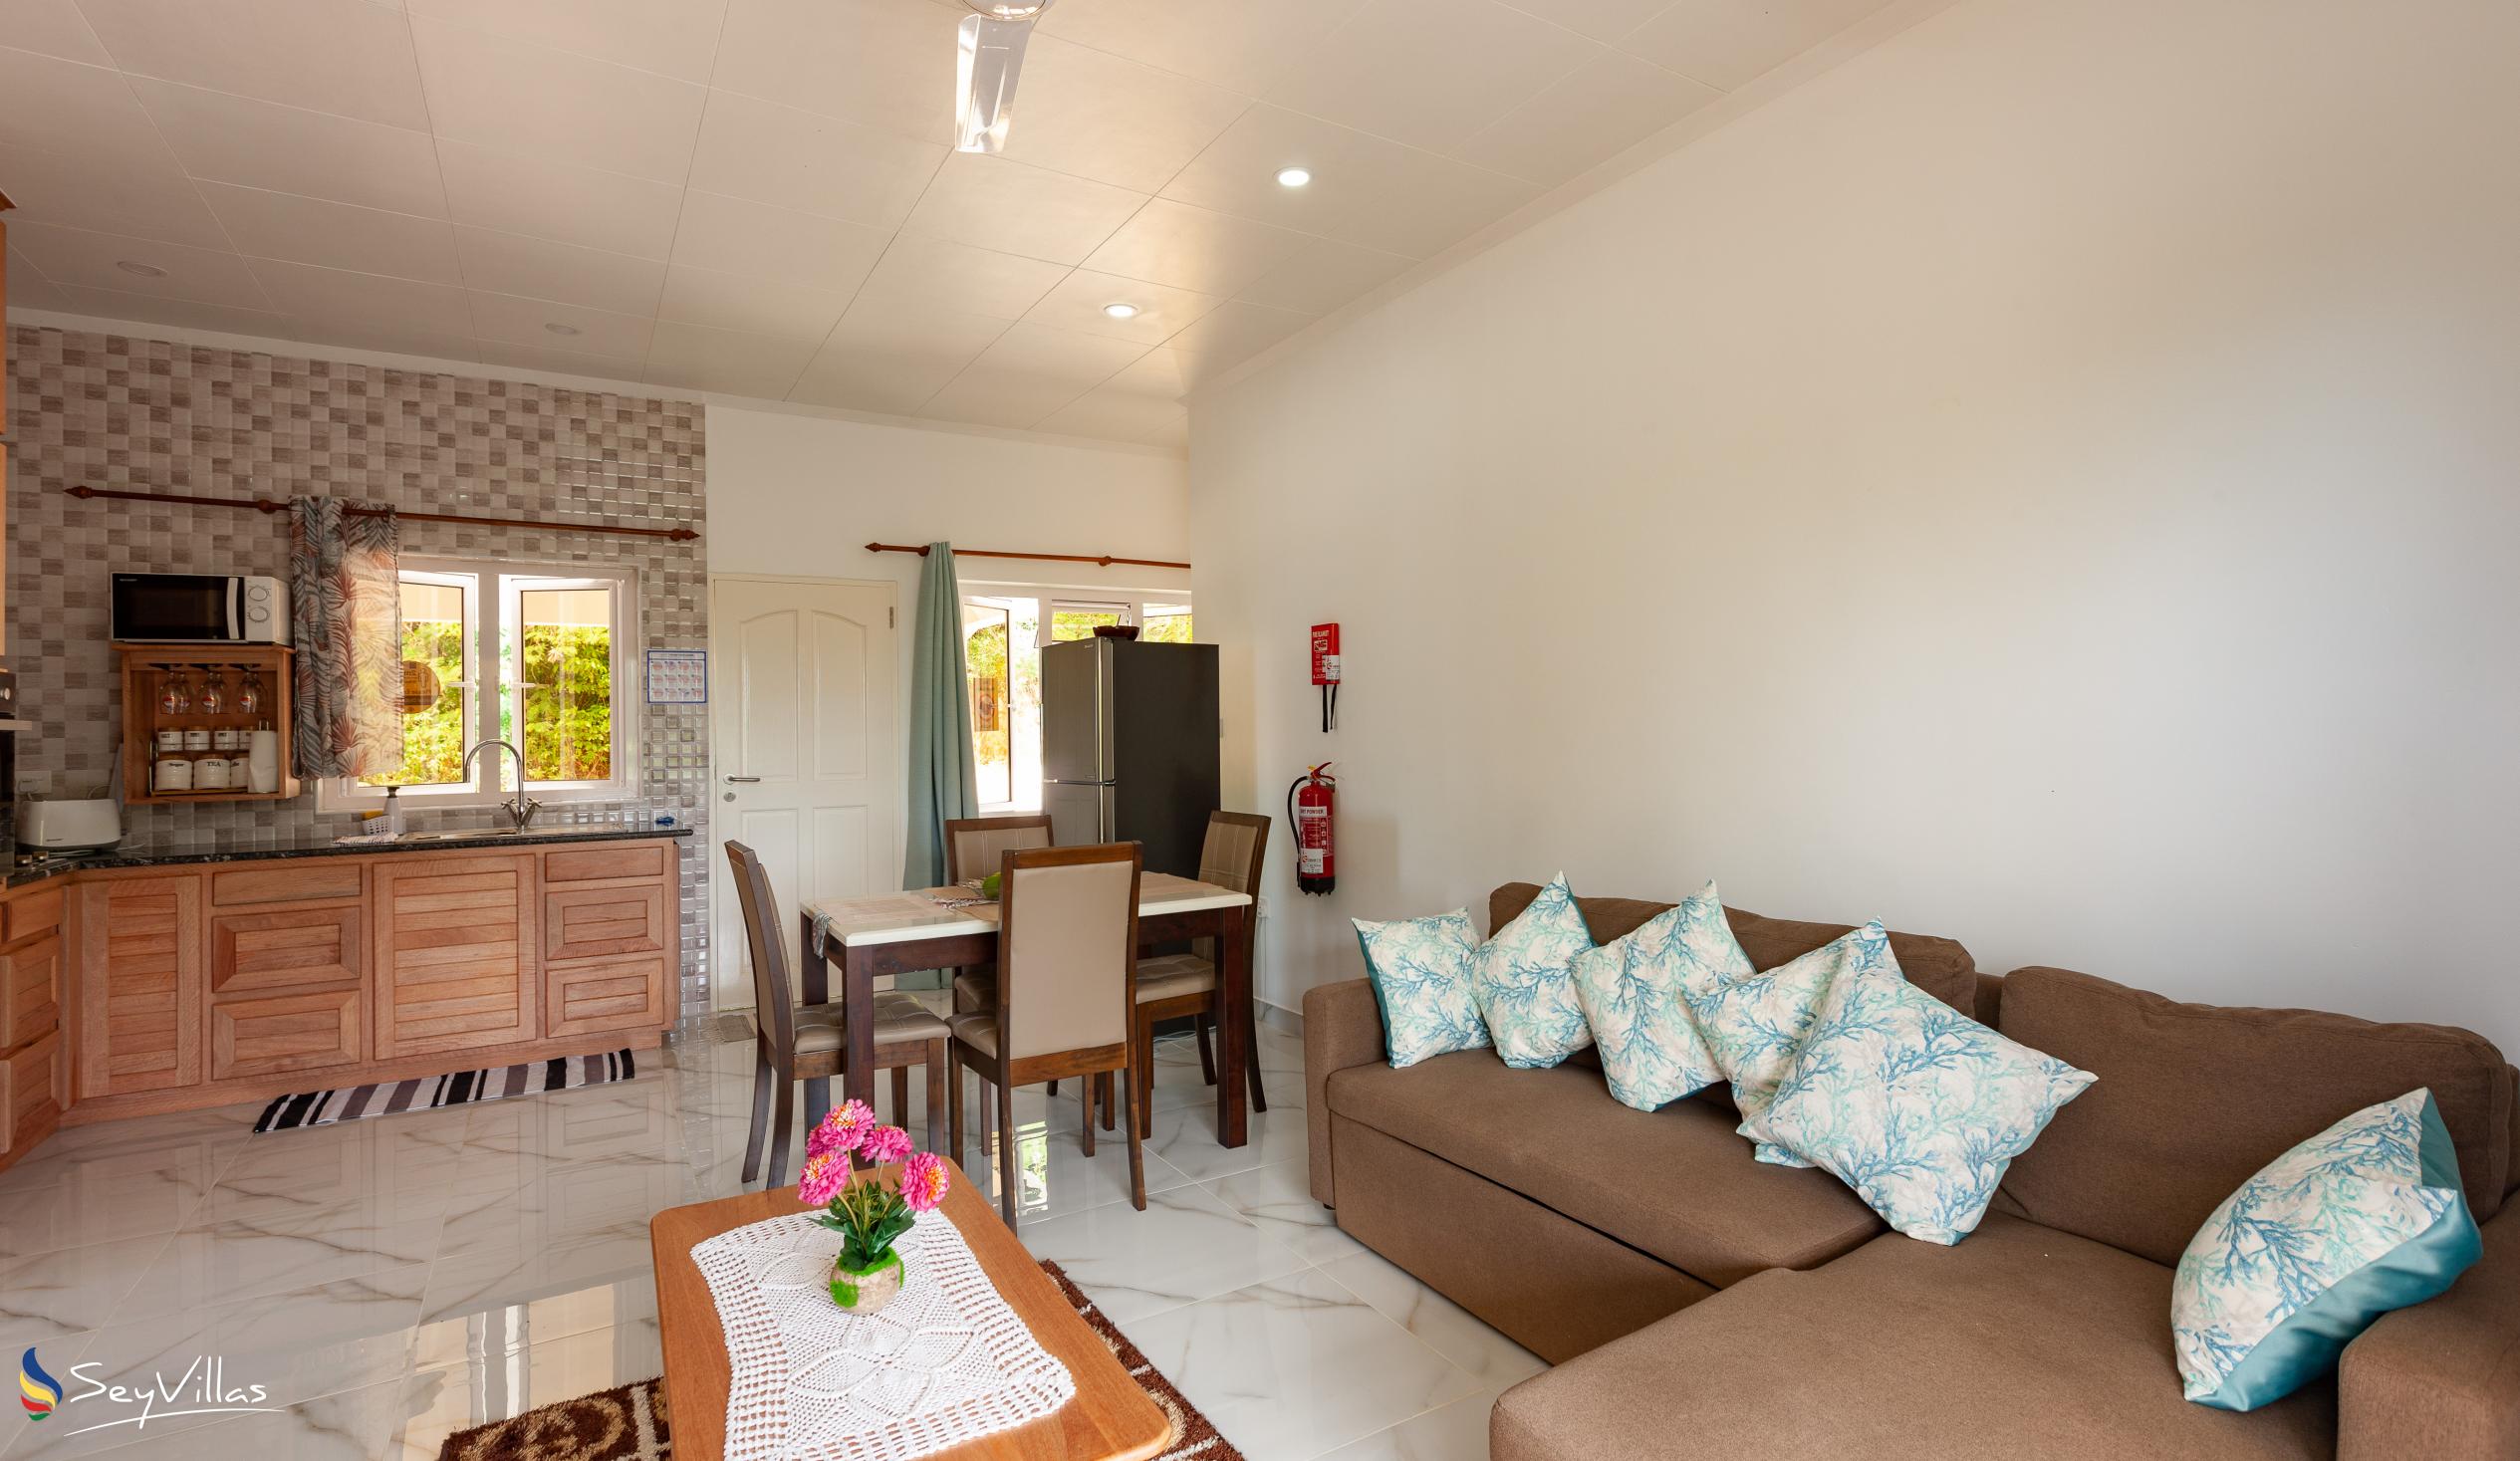 Foto 13: CAM Getaway Villa - Innenbereich - Praslin (Seychellen)